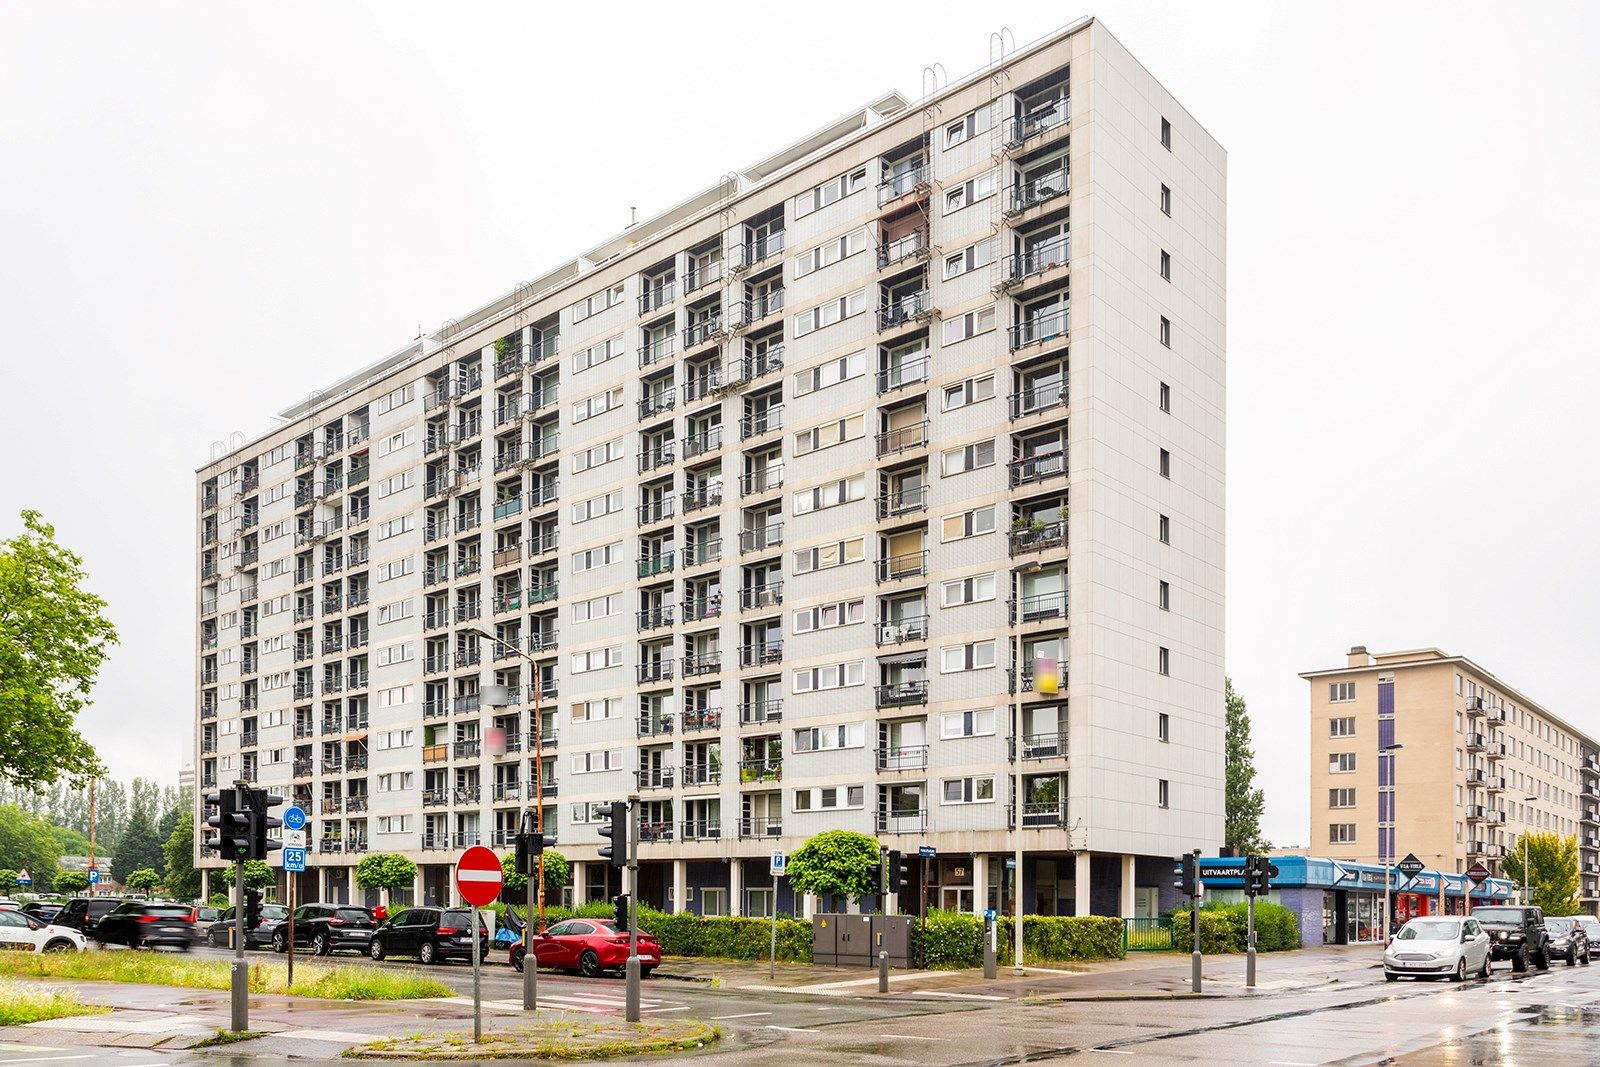 Appartement te koop Halewijnlaan 57 - - 2050 Antwerpen